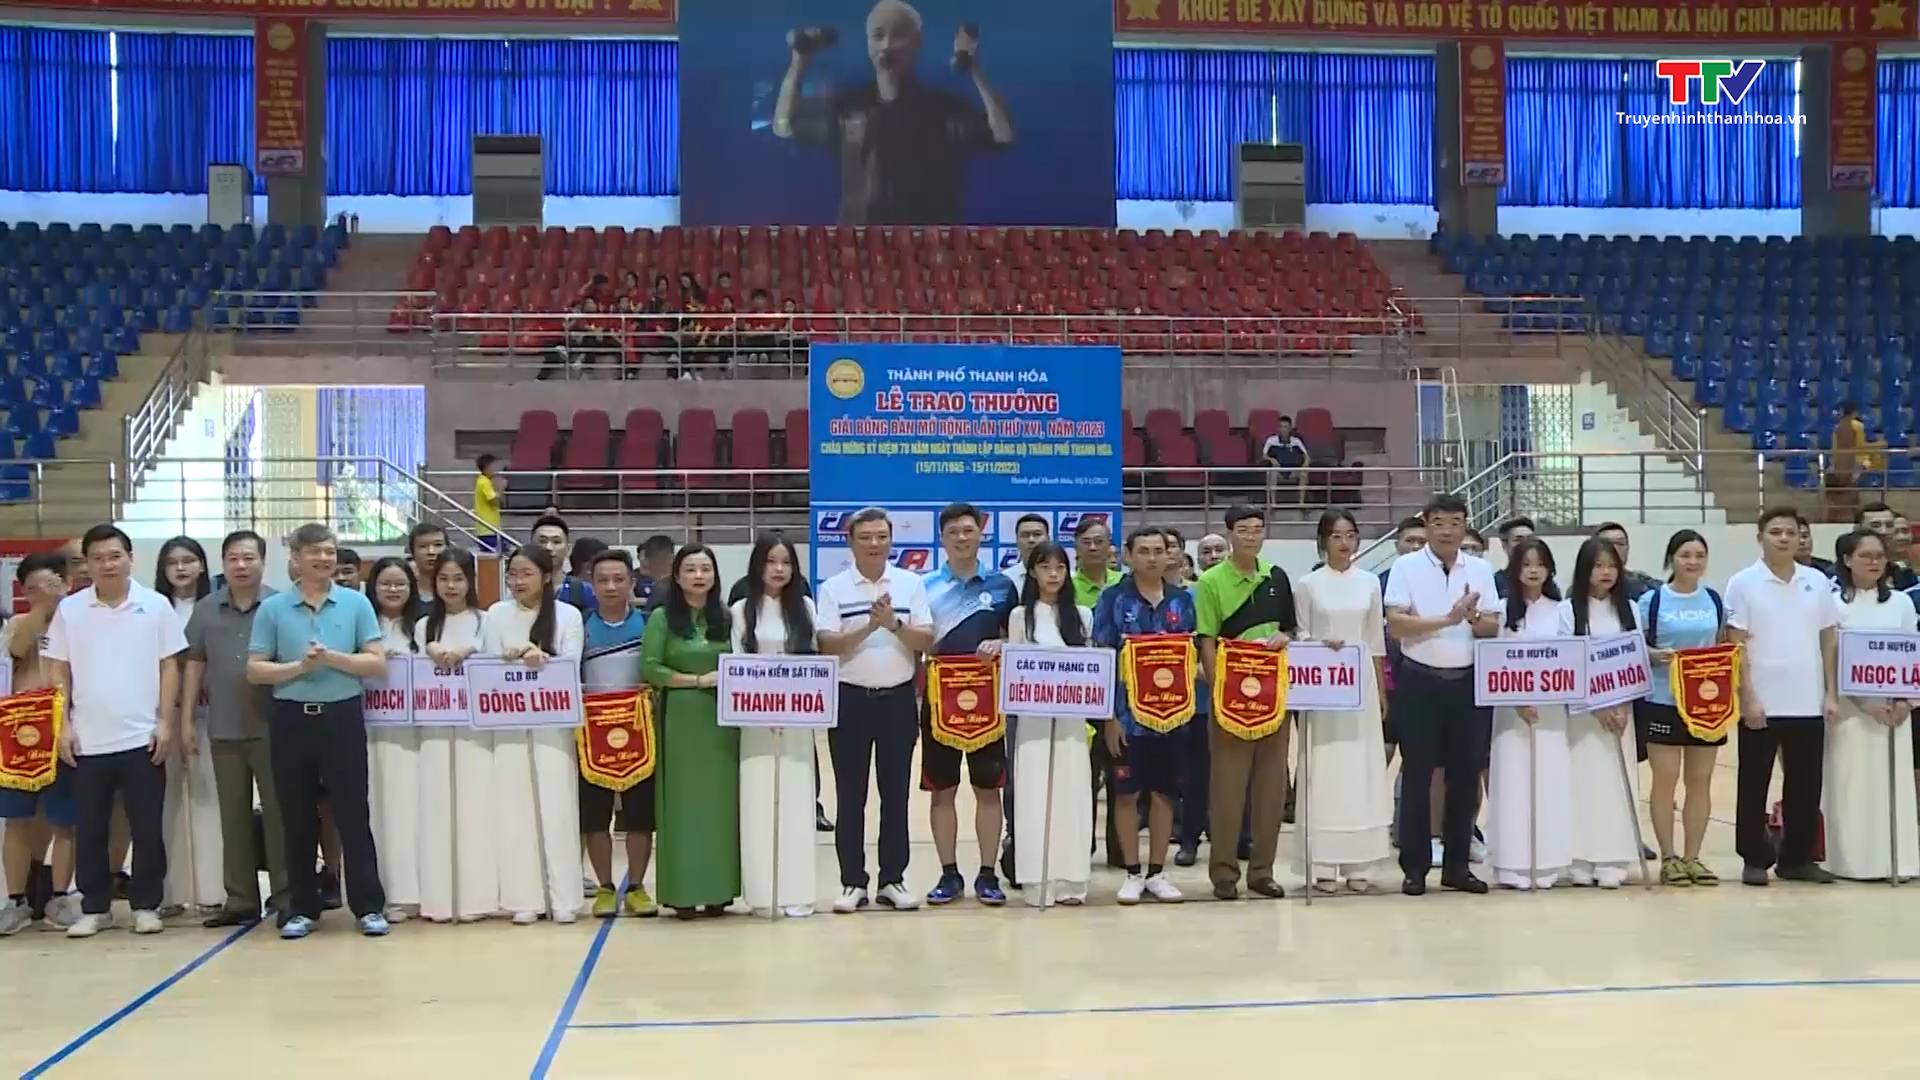 Thành phố Thanh Hóa: Khai mạc giải Bóng bàn chào mừng kỷ niệm 78 năm thành lập Đảng bộ - Ảnh 2.